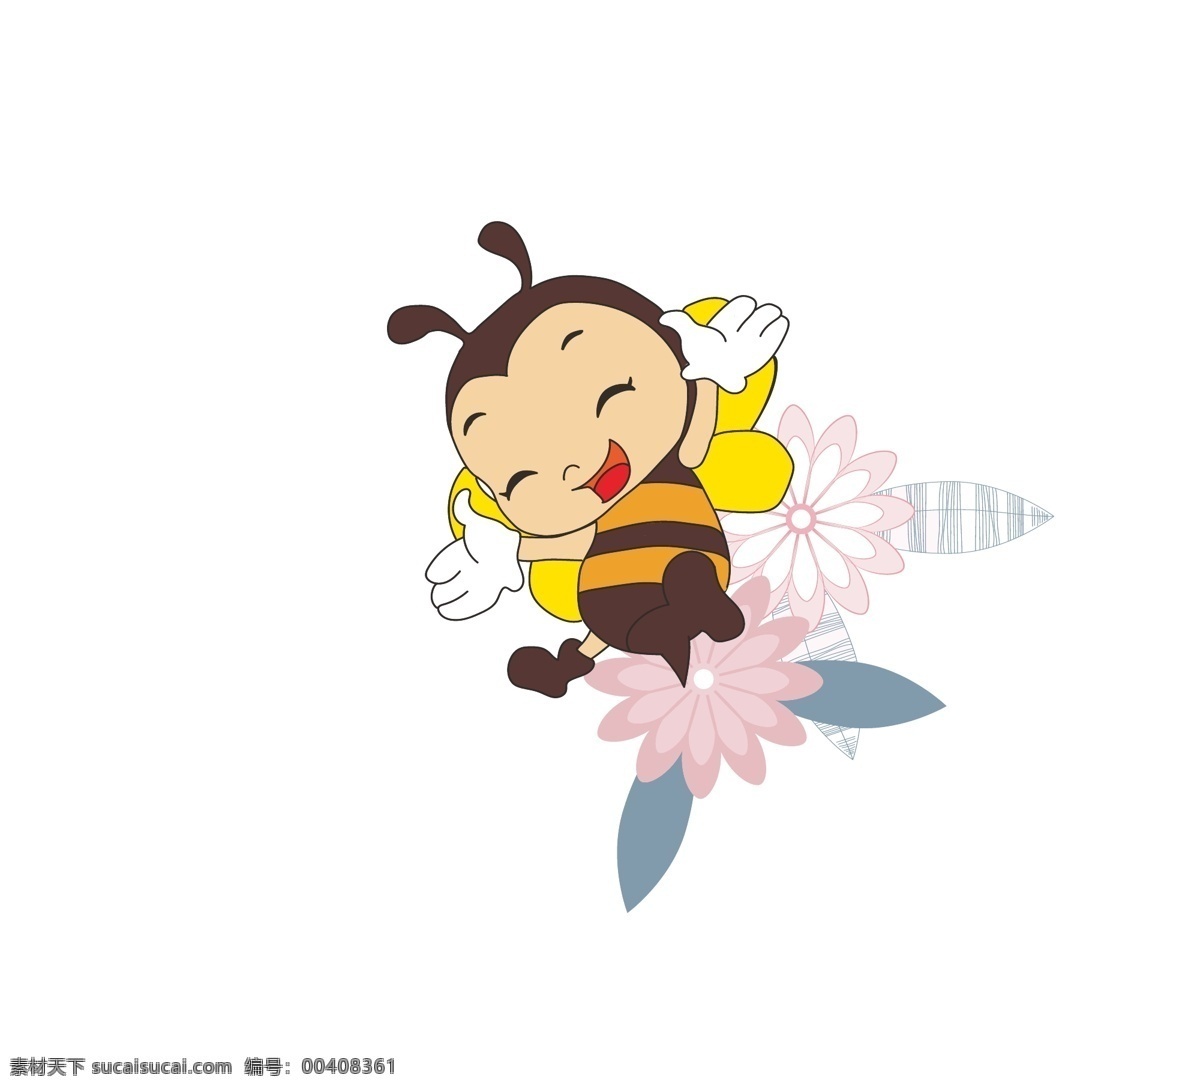 小蜜蜂 卡通 可爱 蜜蜂 印花 手绘 创意 趣味 动漫动画